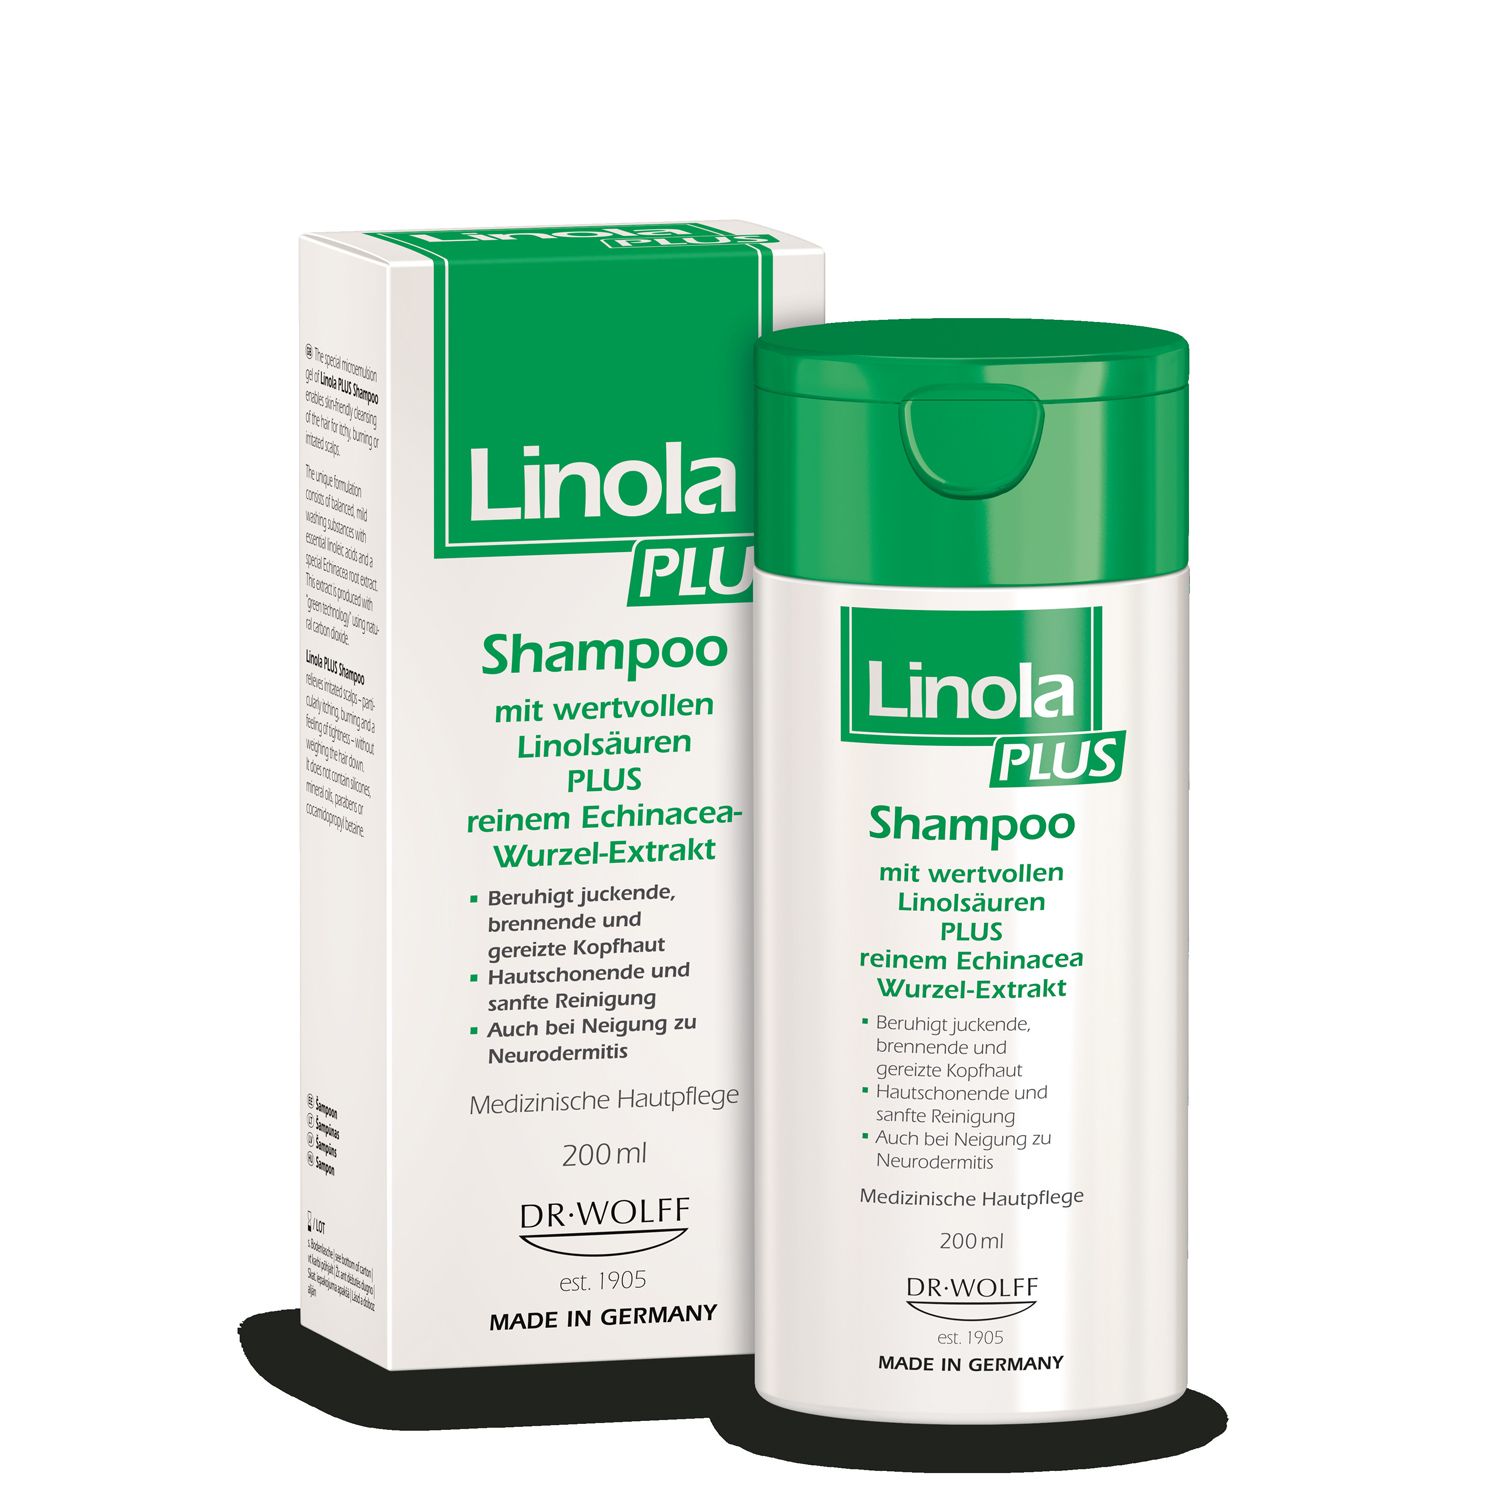 Linola PLUS Shampoo: Haarpflege für juckende, brennende oder gereizte Kopfhaut